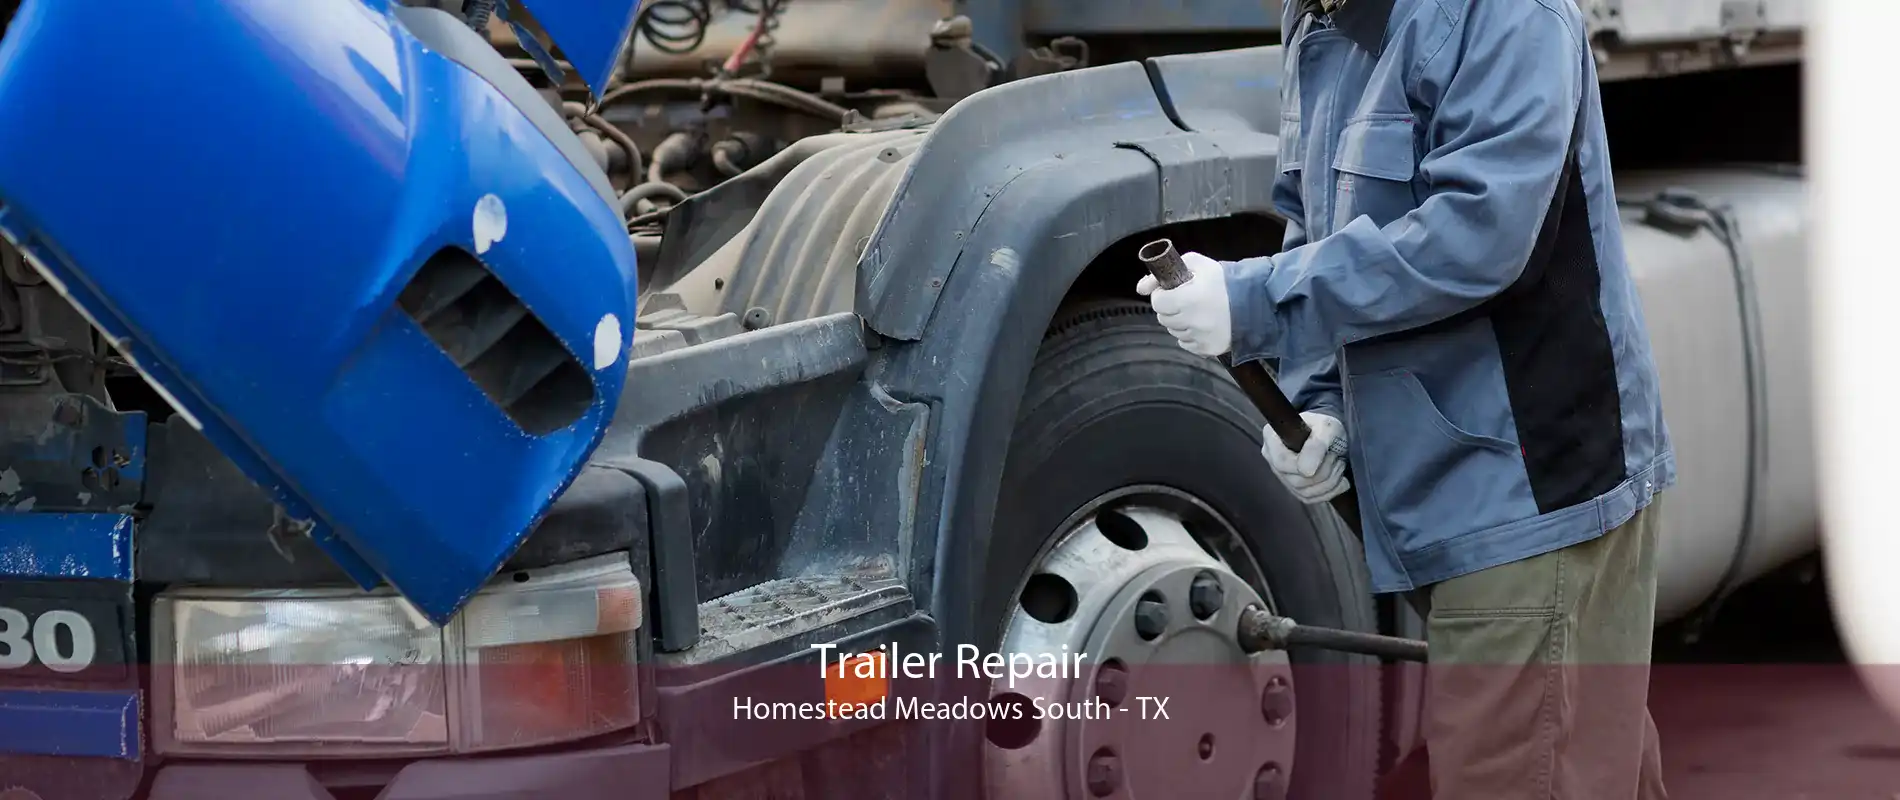 Trailer Repair Homestead Meadows South - TX